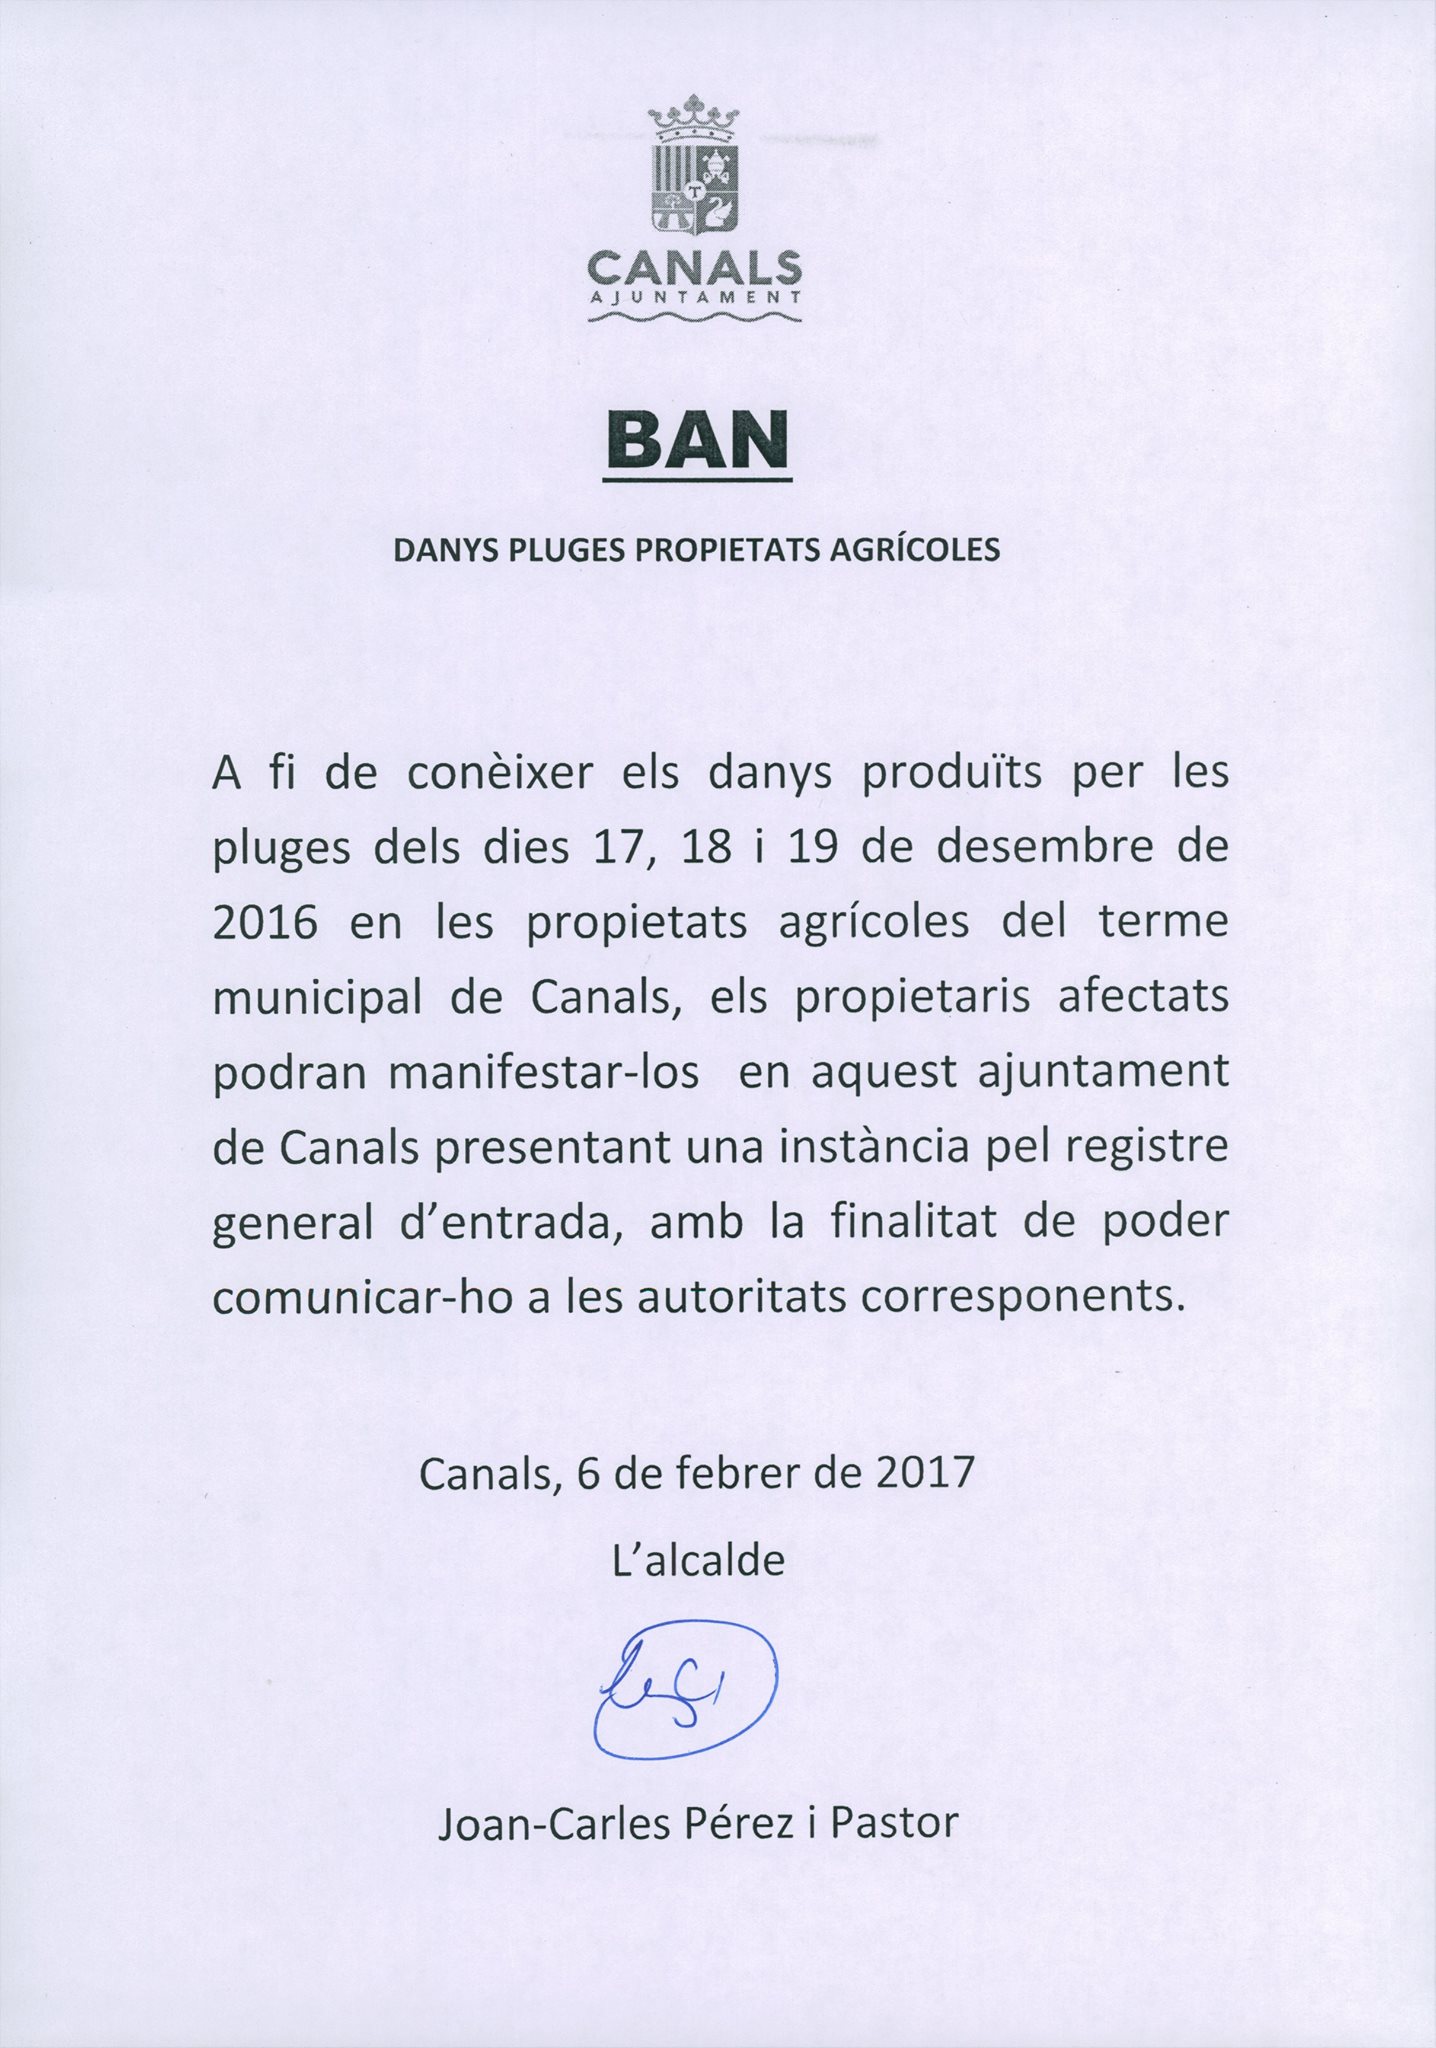 2017.02.08 Danys pluges propietats agrícoles. Ajuntament de Canals.